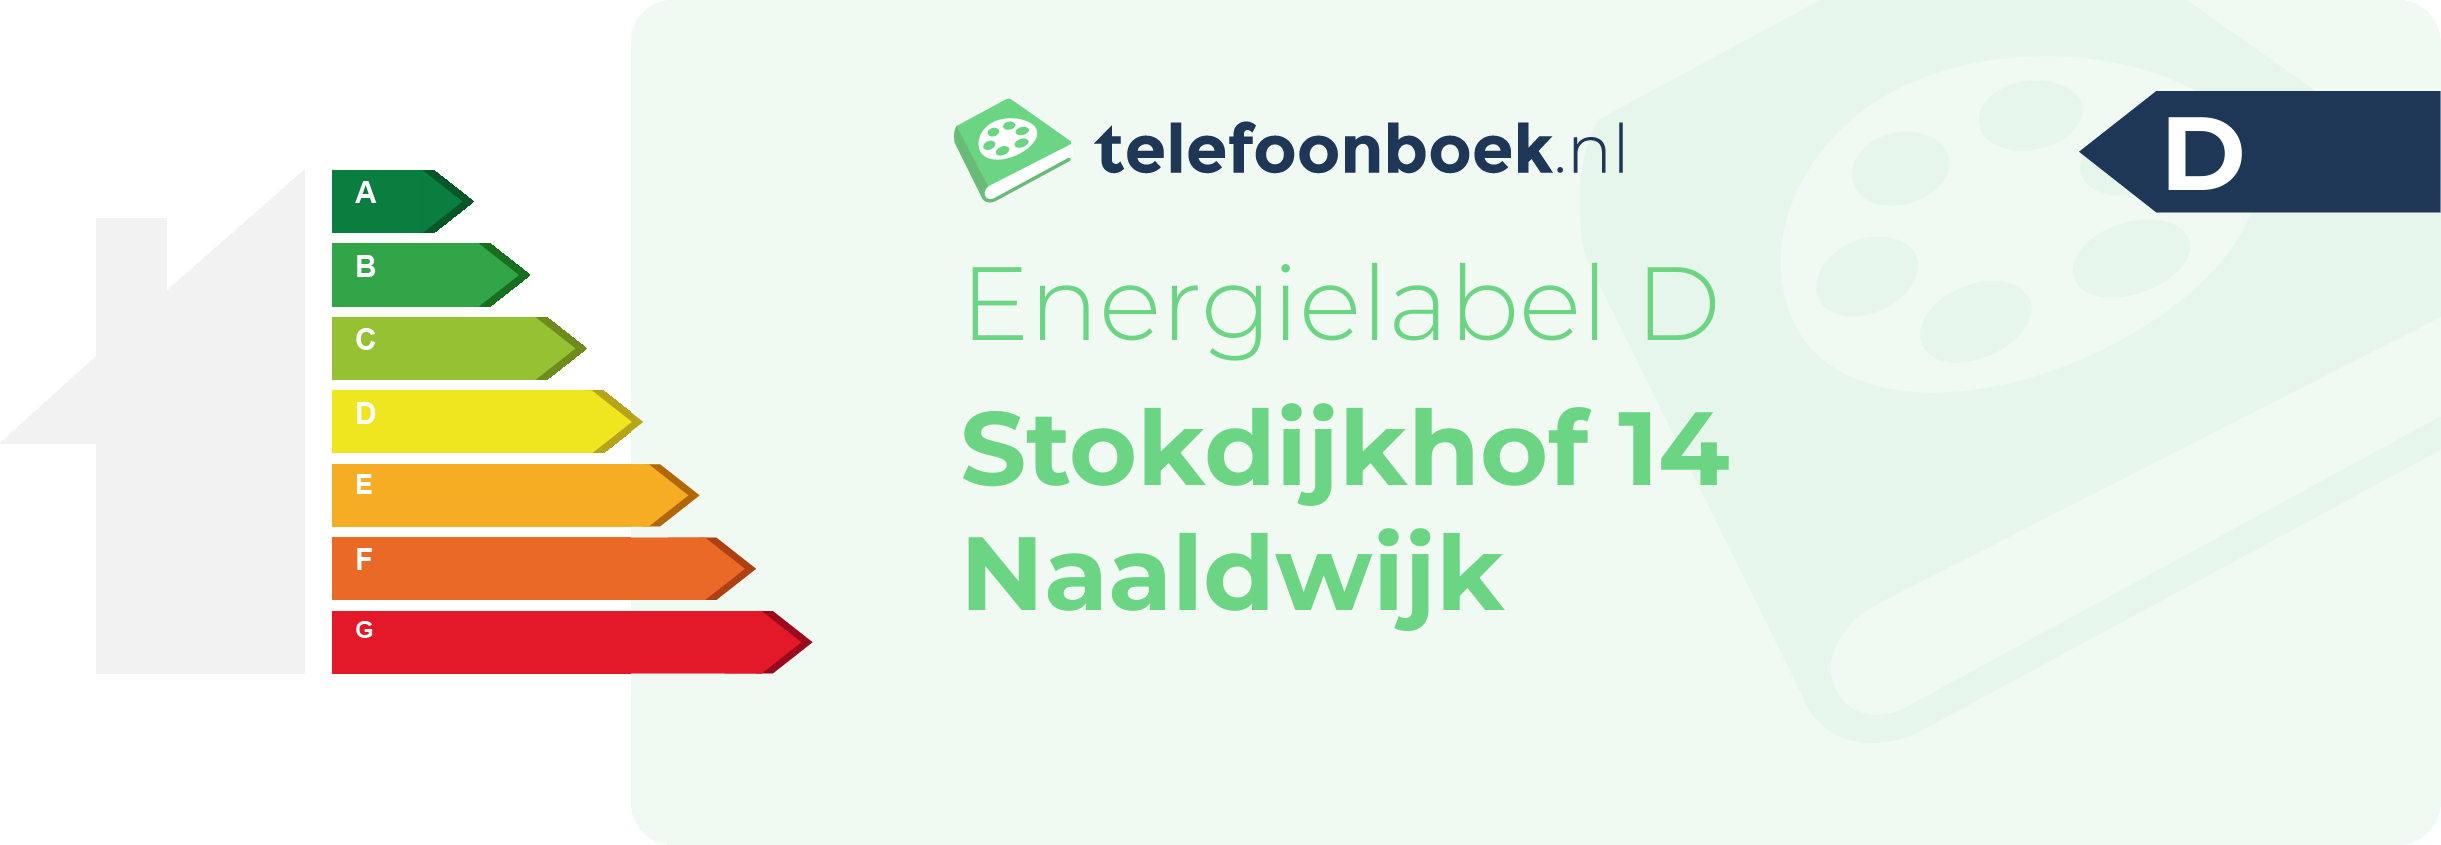 Energielabel Stokdijkhof 14 Naaldwijk